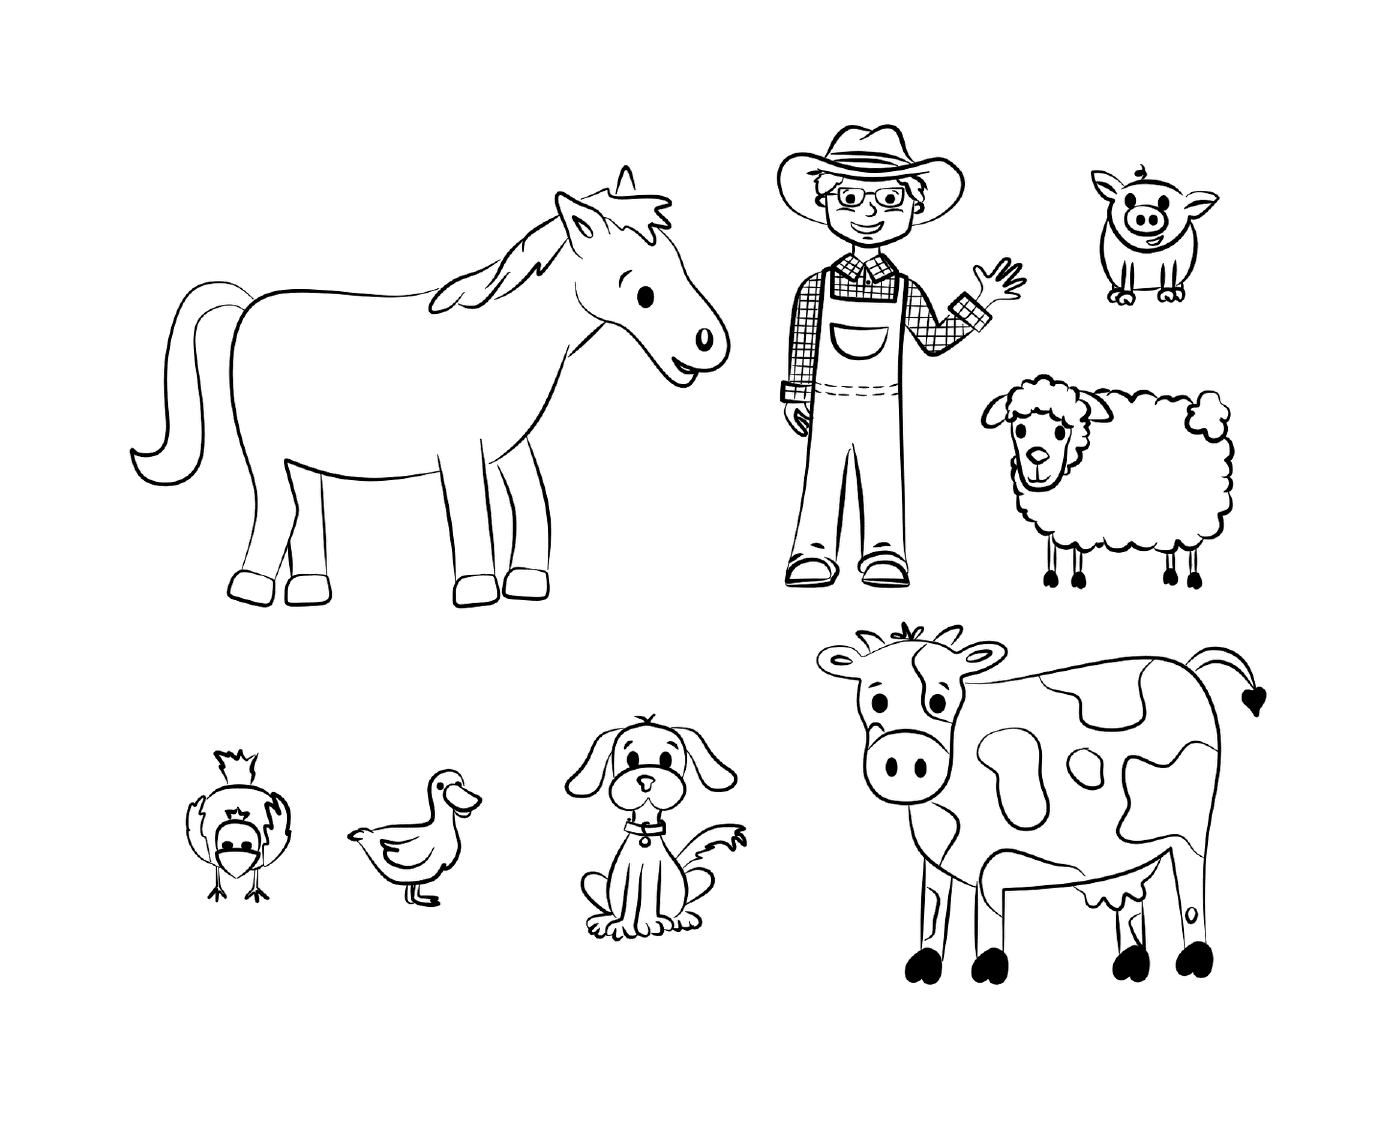  фермер, корова, лошадь, собака, утка и курица 